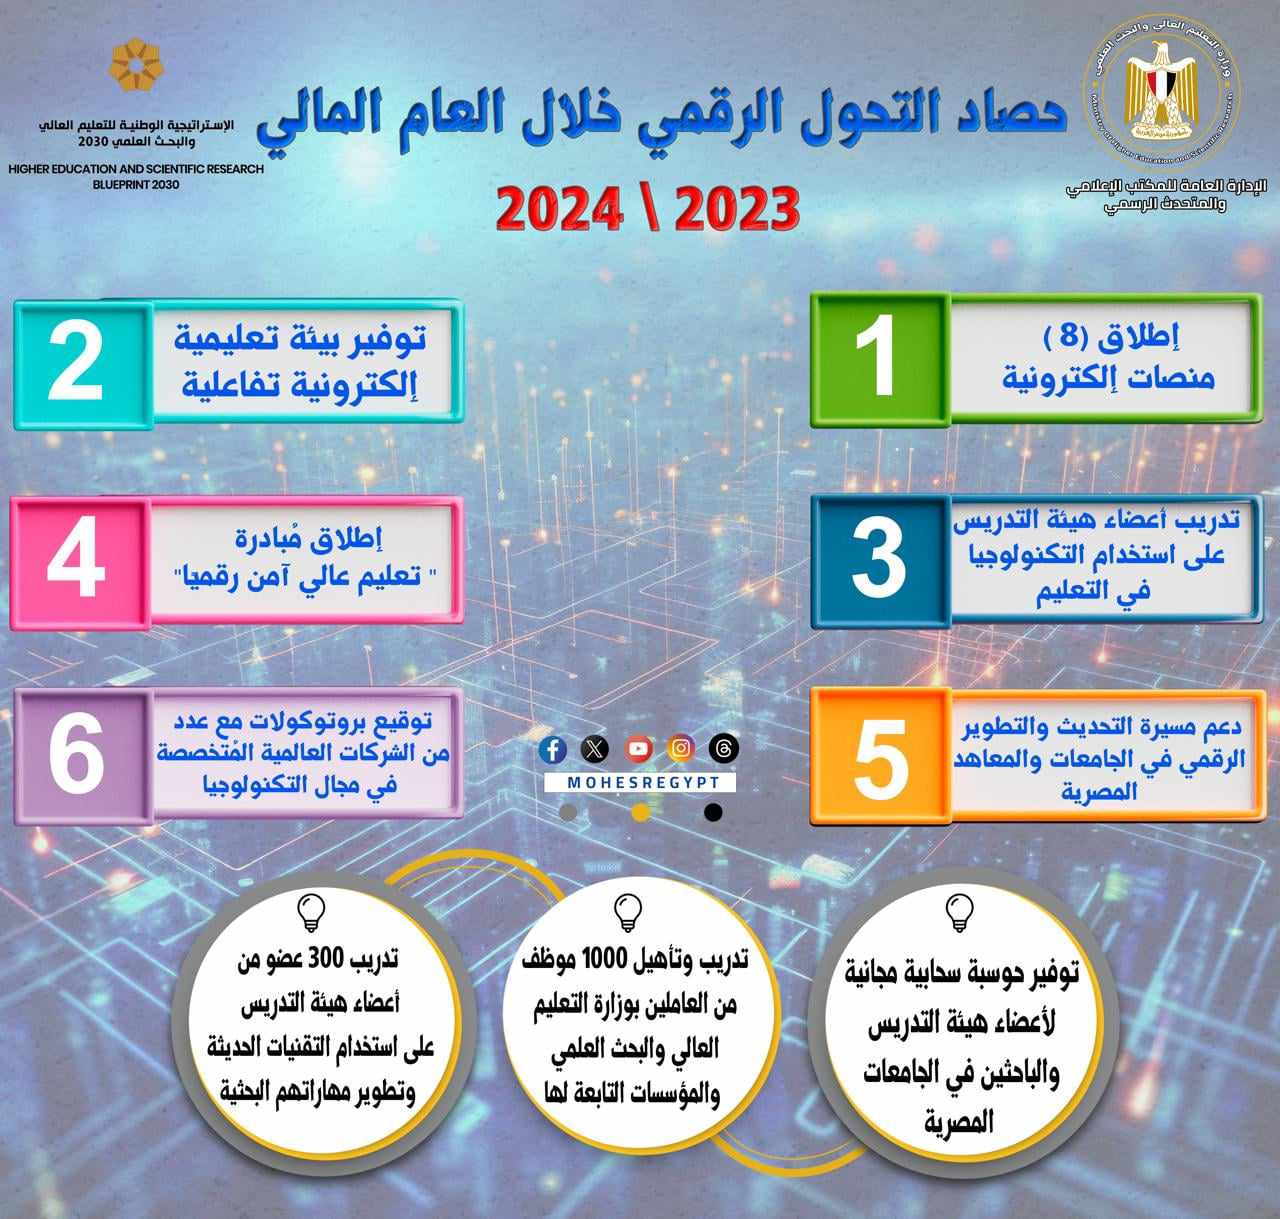 حصاد وزارة التعليم العالي والبحث العلمي في التحول الرقمي خلال عام 2024